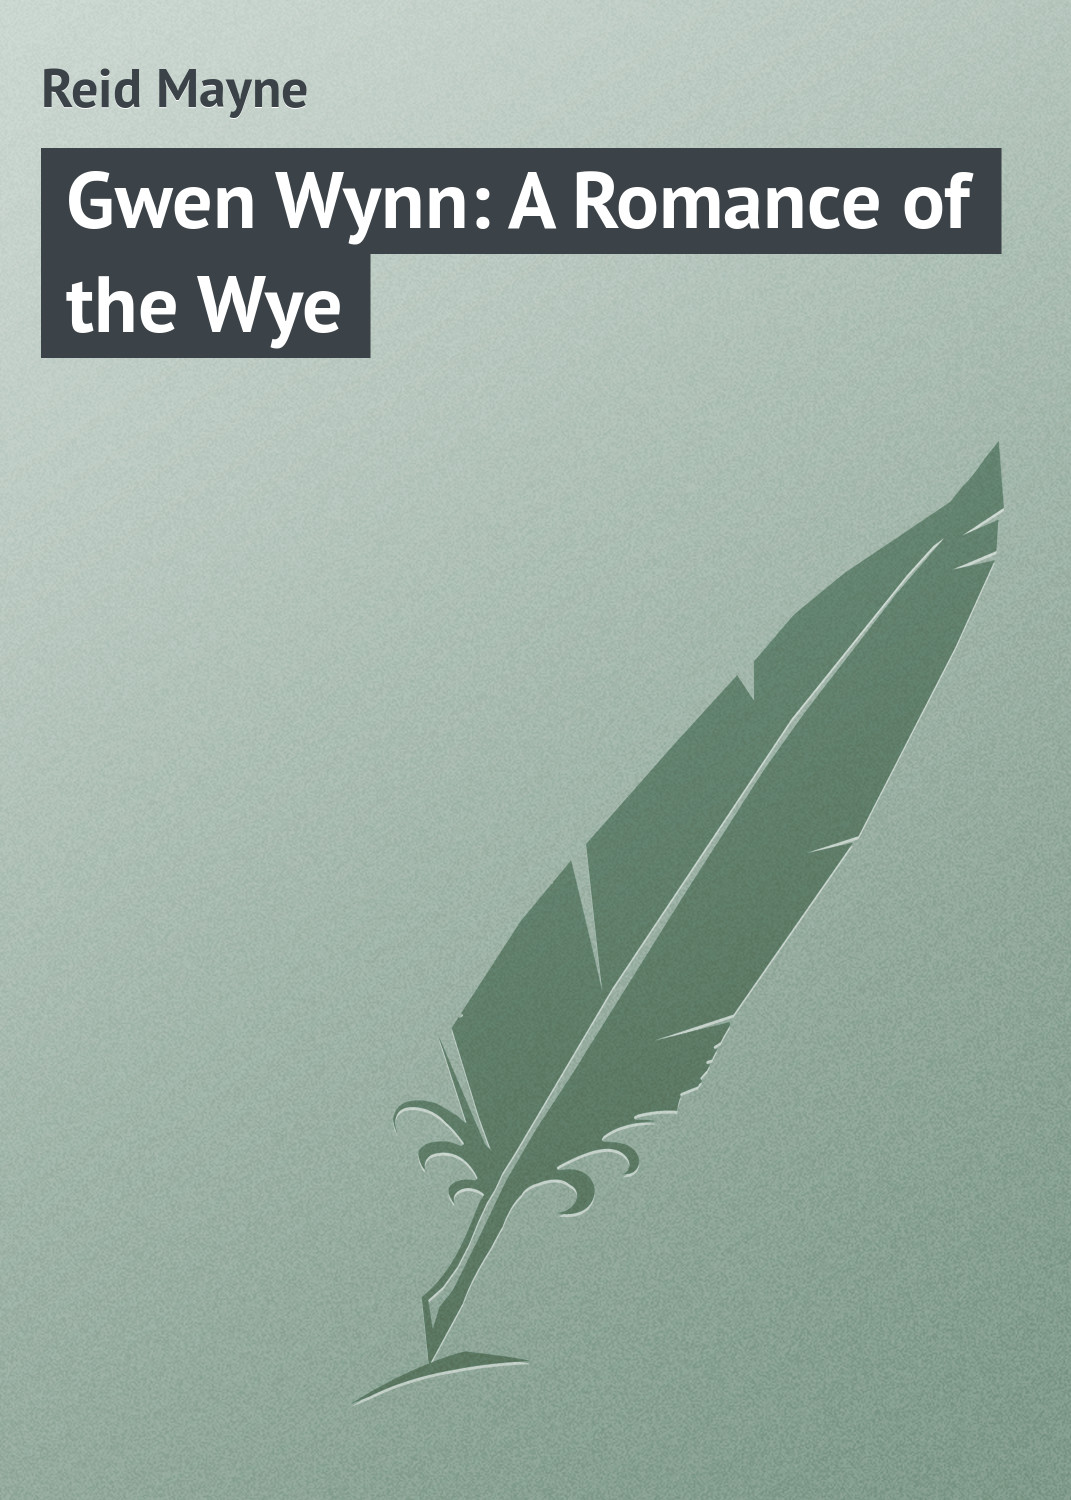 Книга Gwen Wynn: A Romance of the Wye из серии , созданная Mayne Reid, может относится к жанру Зарубежная классика, Зарубежные детские книги. Стоимость электронной книги Gwen Wynn: A Romance of the Wye с идентификатором 23149035 составляет 5.99 руб.